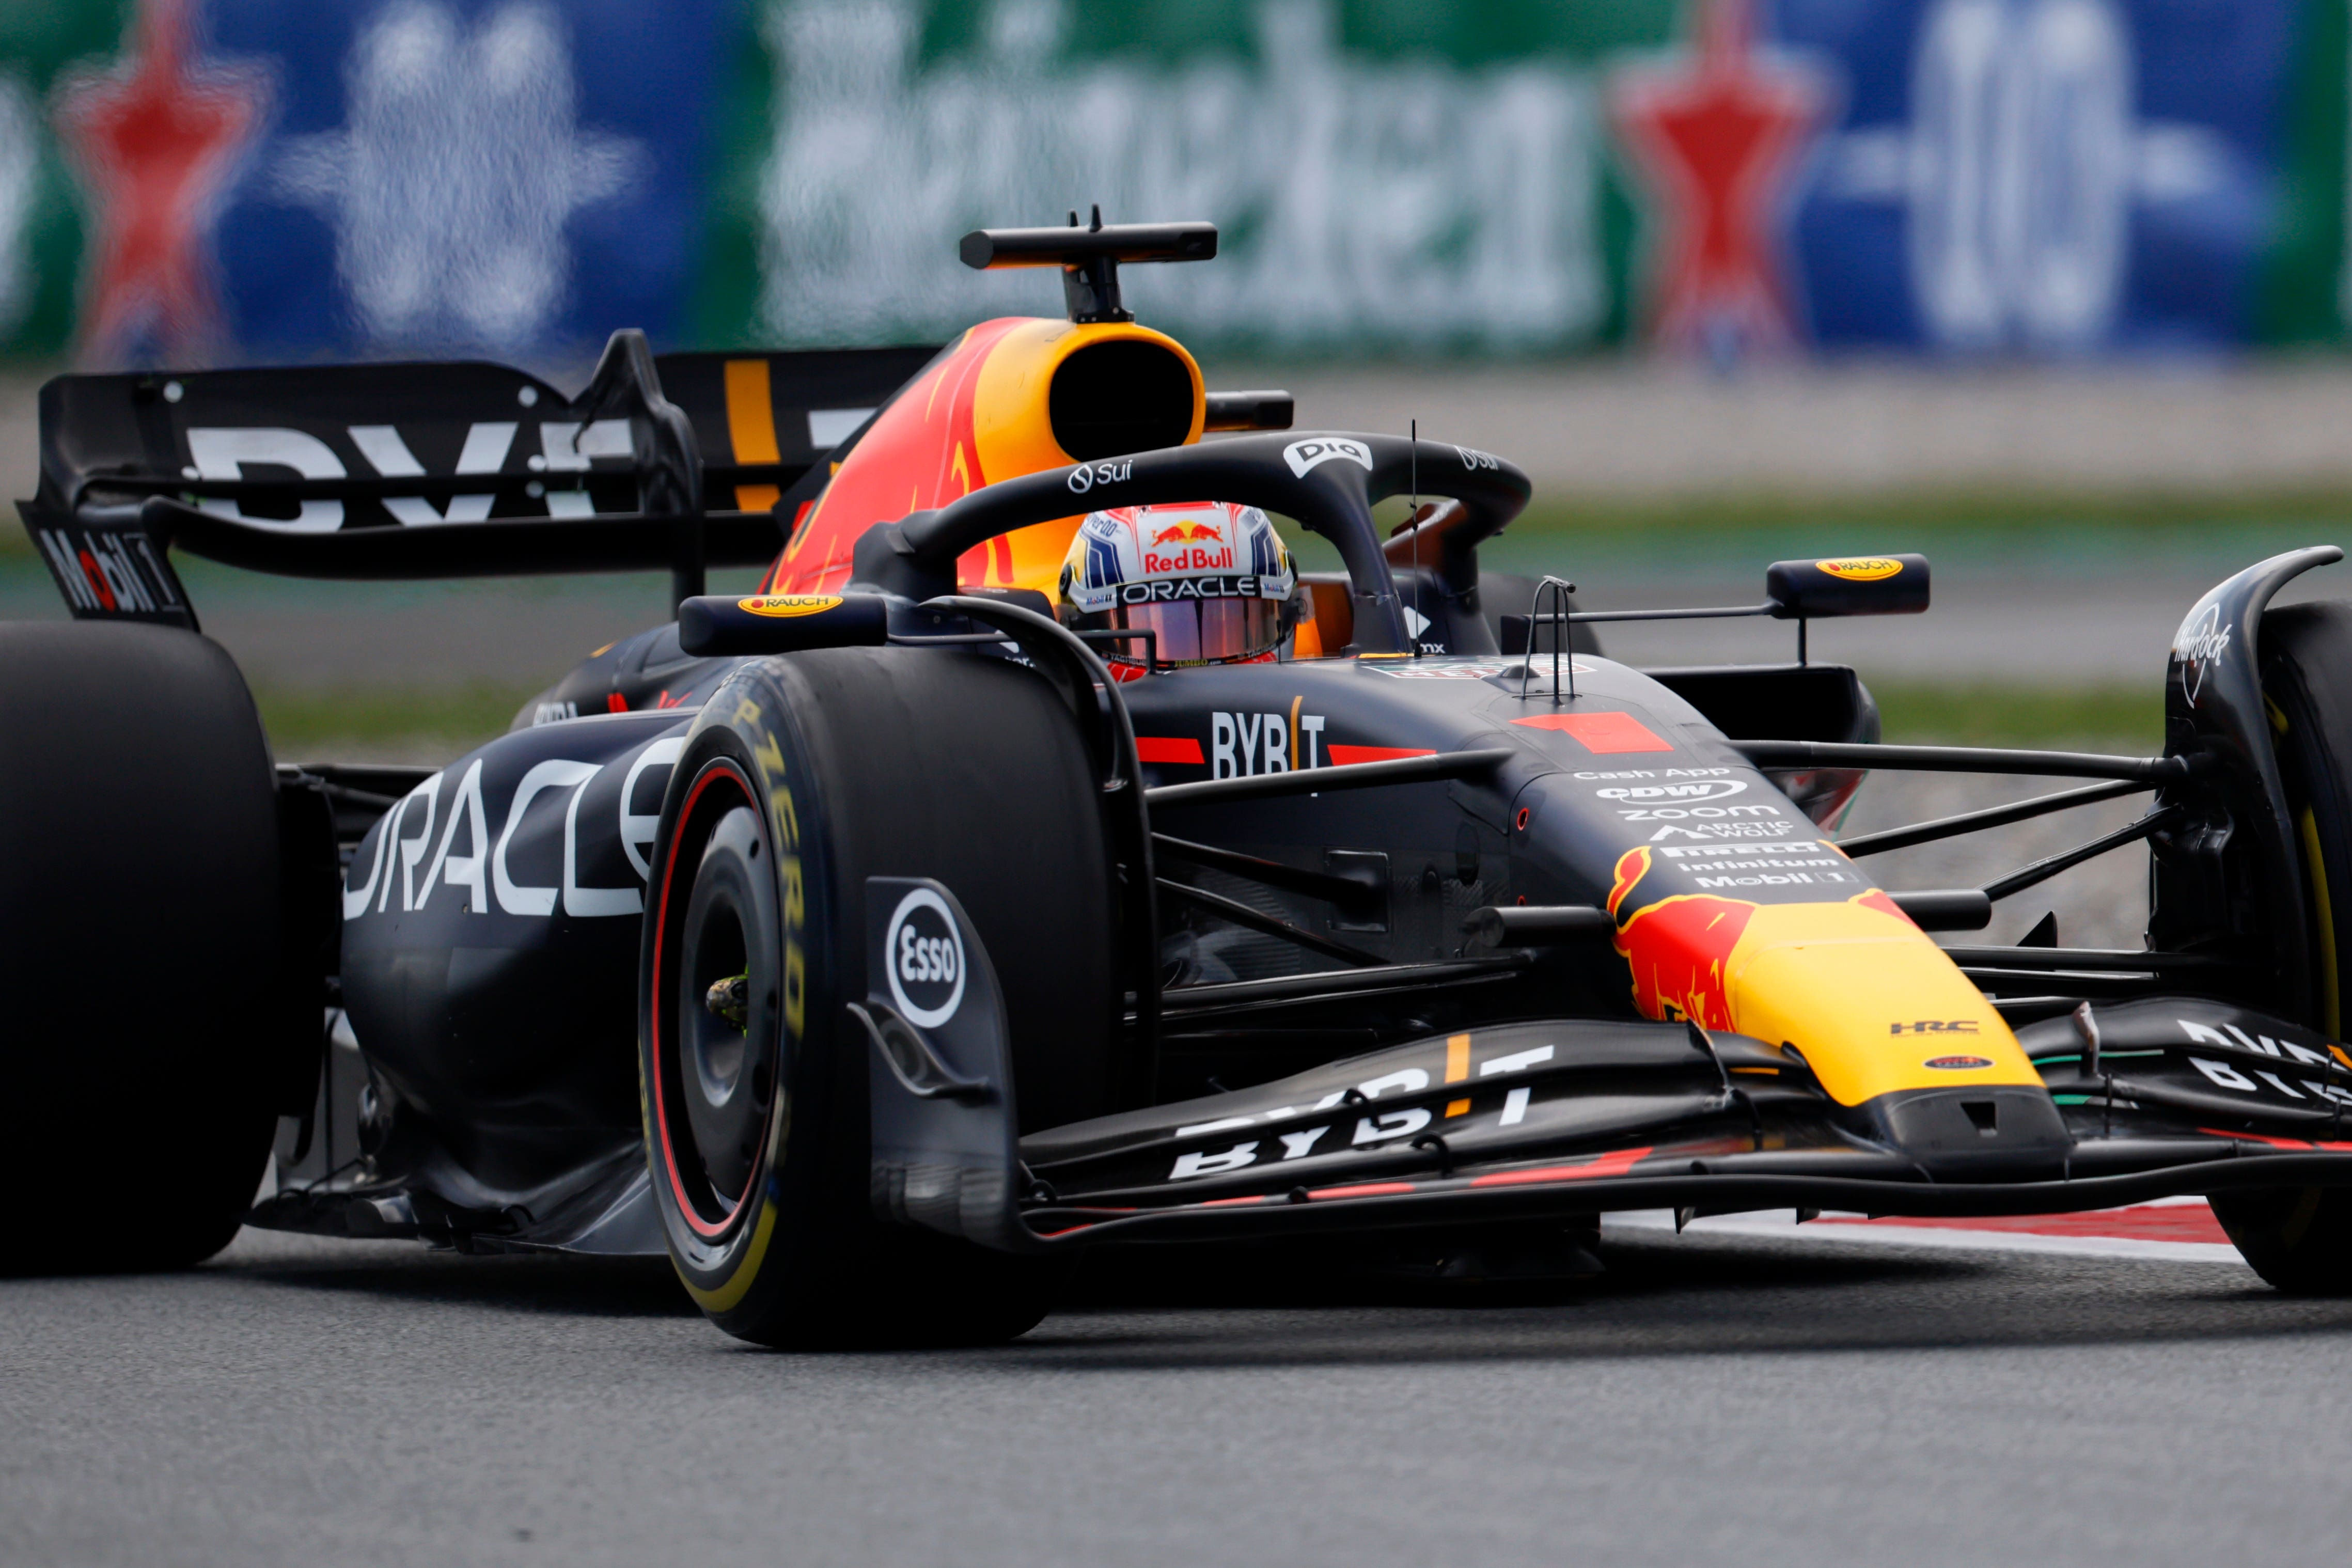 Max Verstappen finished quickest in final practice (Joan Monfort/AP)